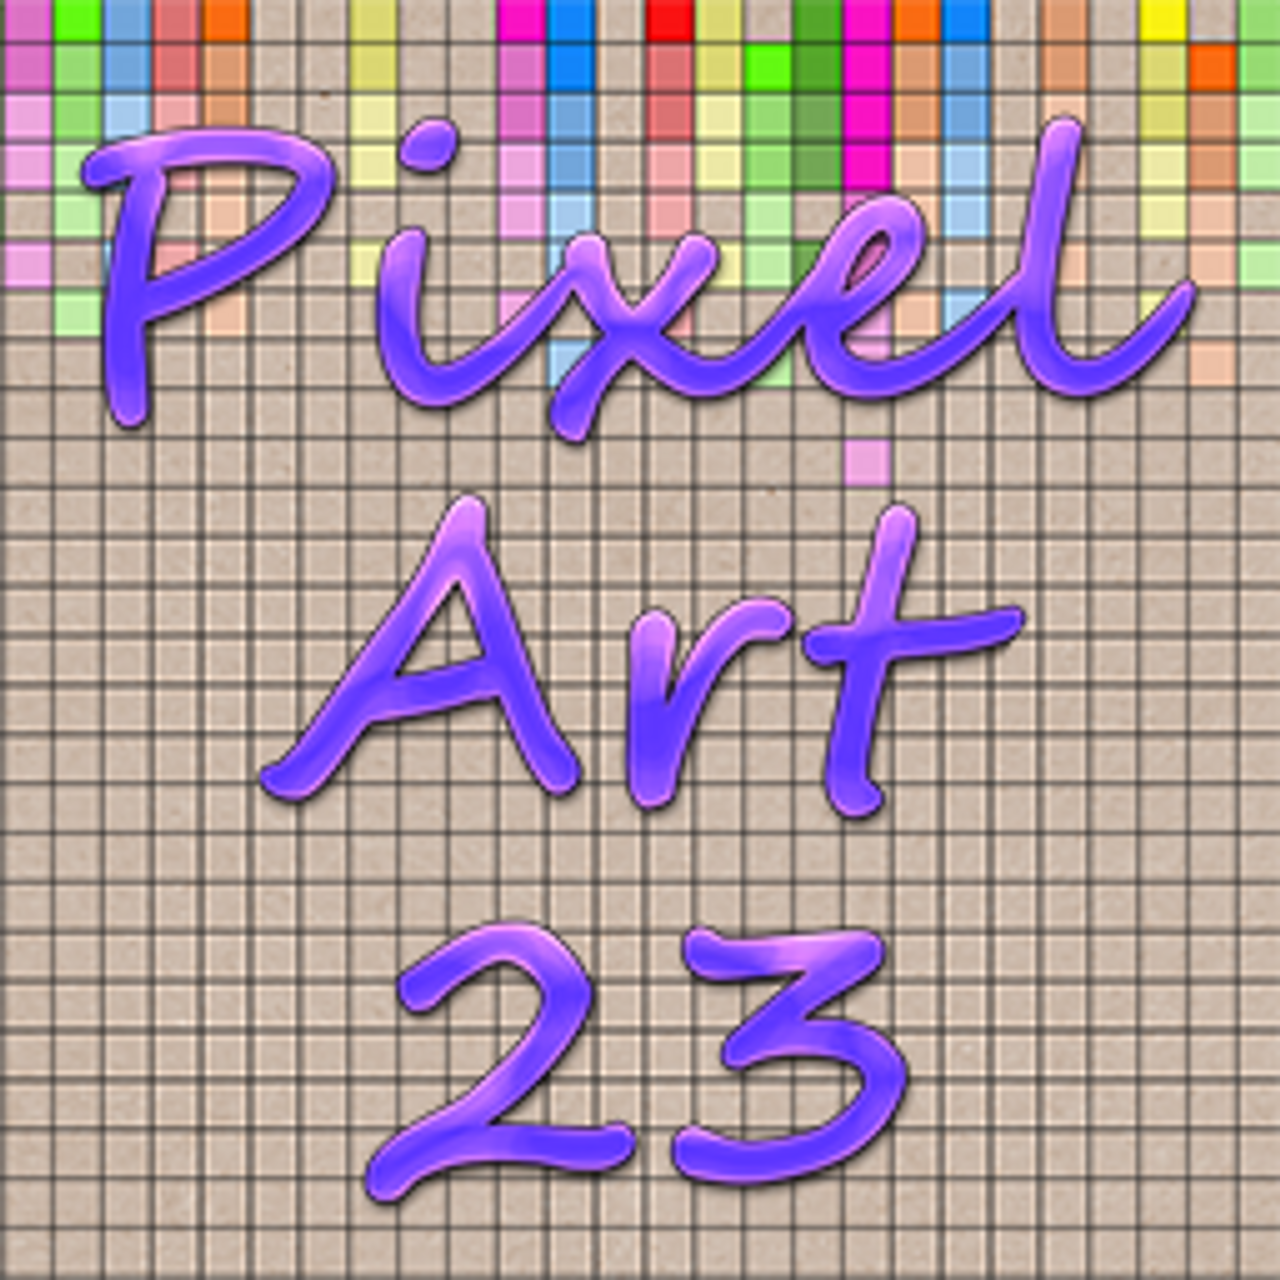 Pixel Art 23